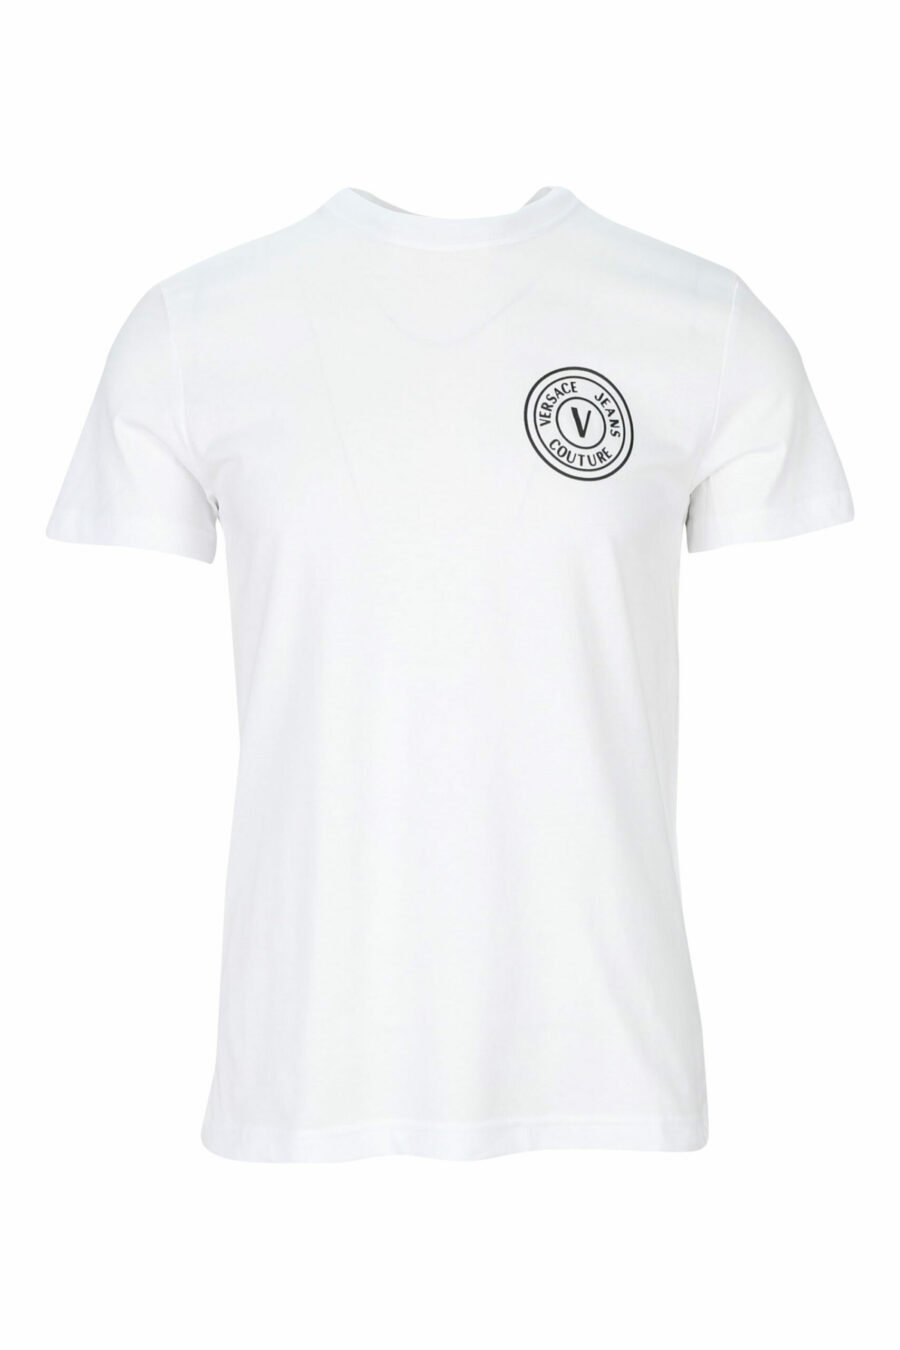 Camiseta blanca con minilogo circular negro - 8052019468526 scaled